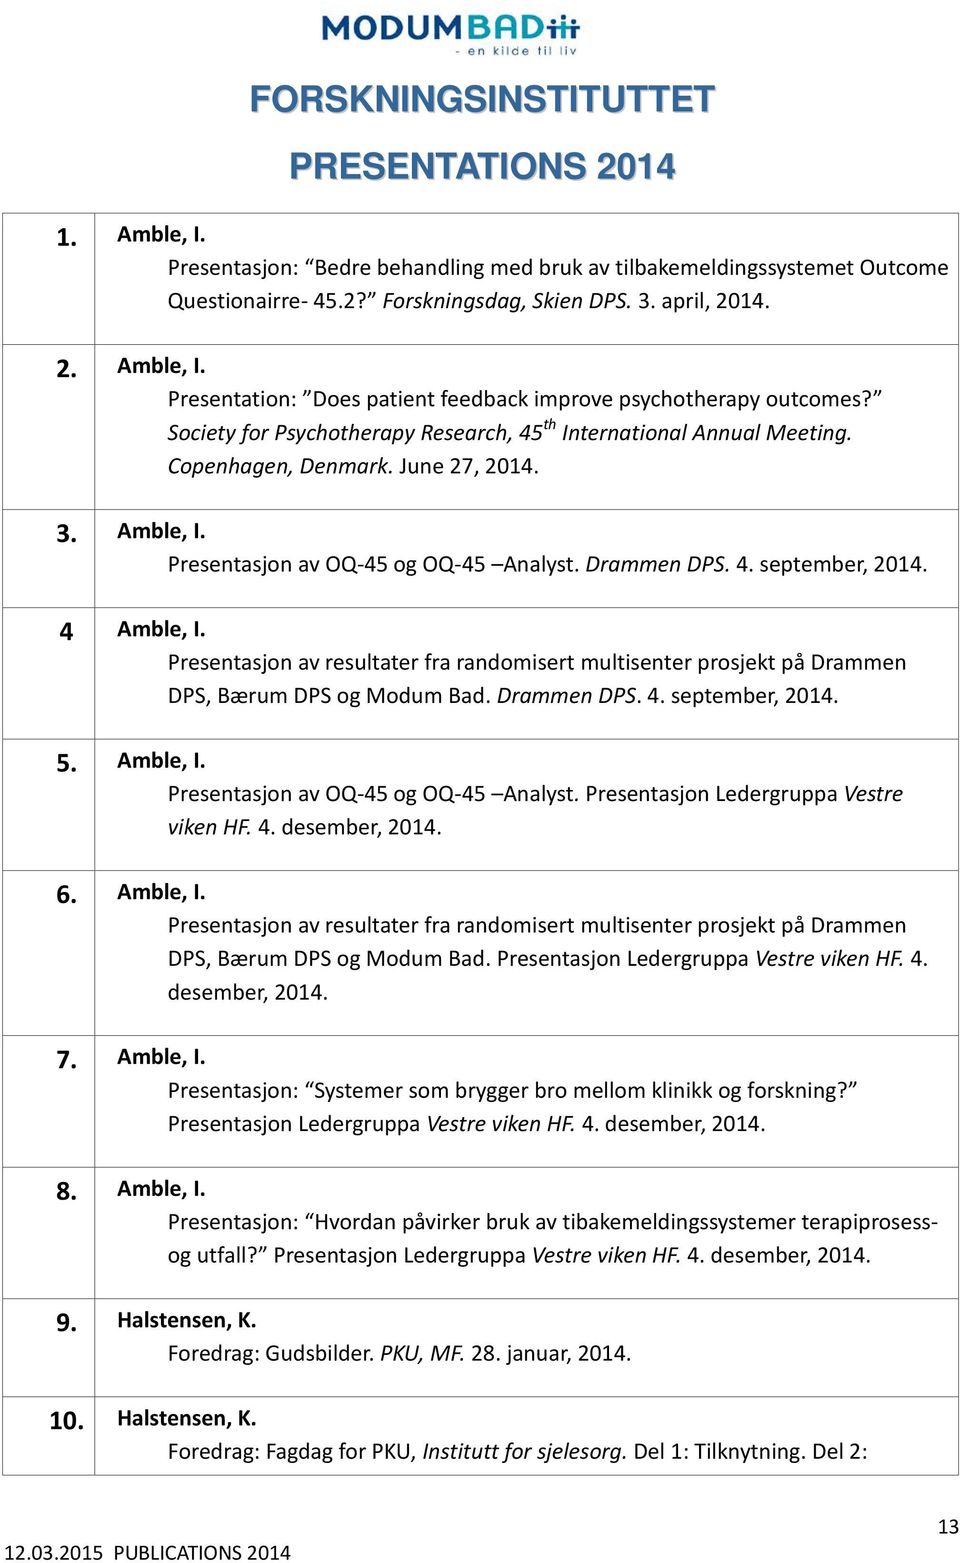 4 Amble, I. Presentasjon av resultater fra randomisert multisenter prosjekt på Drammen DPS, Bærum DPS og Modum Bad. Drammen DPS. 4. september, 2014. 5. Amble, I. Presentasjon av OQ-45 og OQ-45 Analyst.